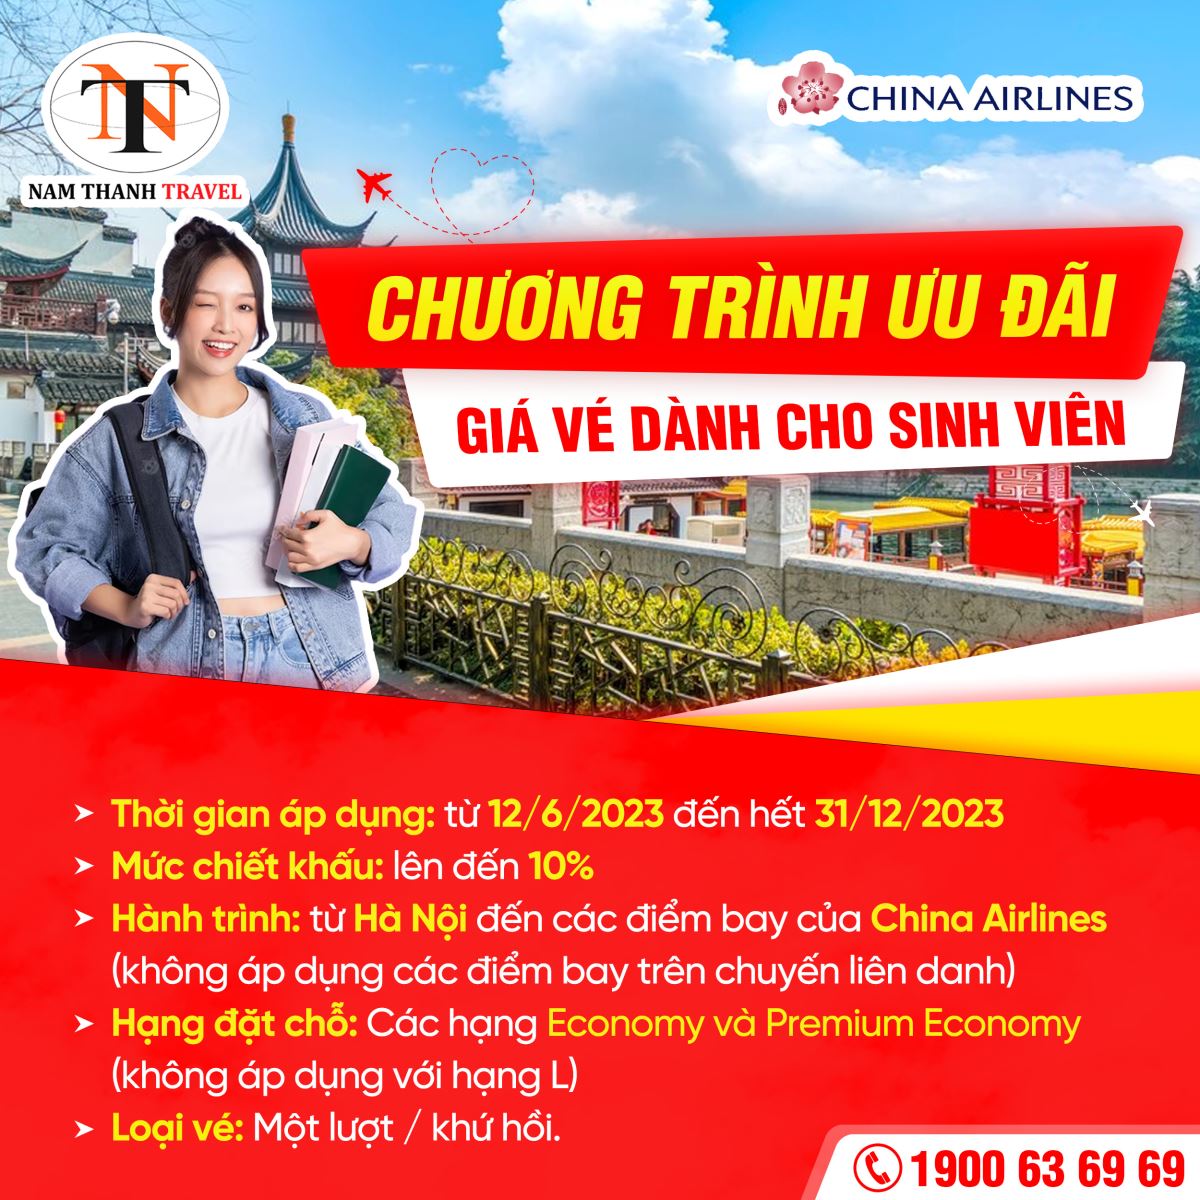 China Airlines - Ưu đãi giá vé dành cho Sinh viên